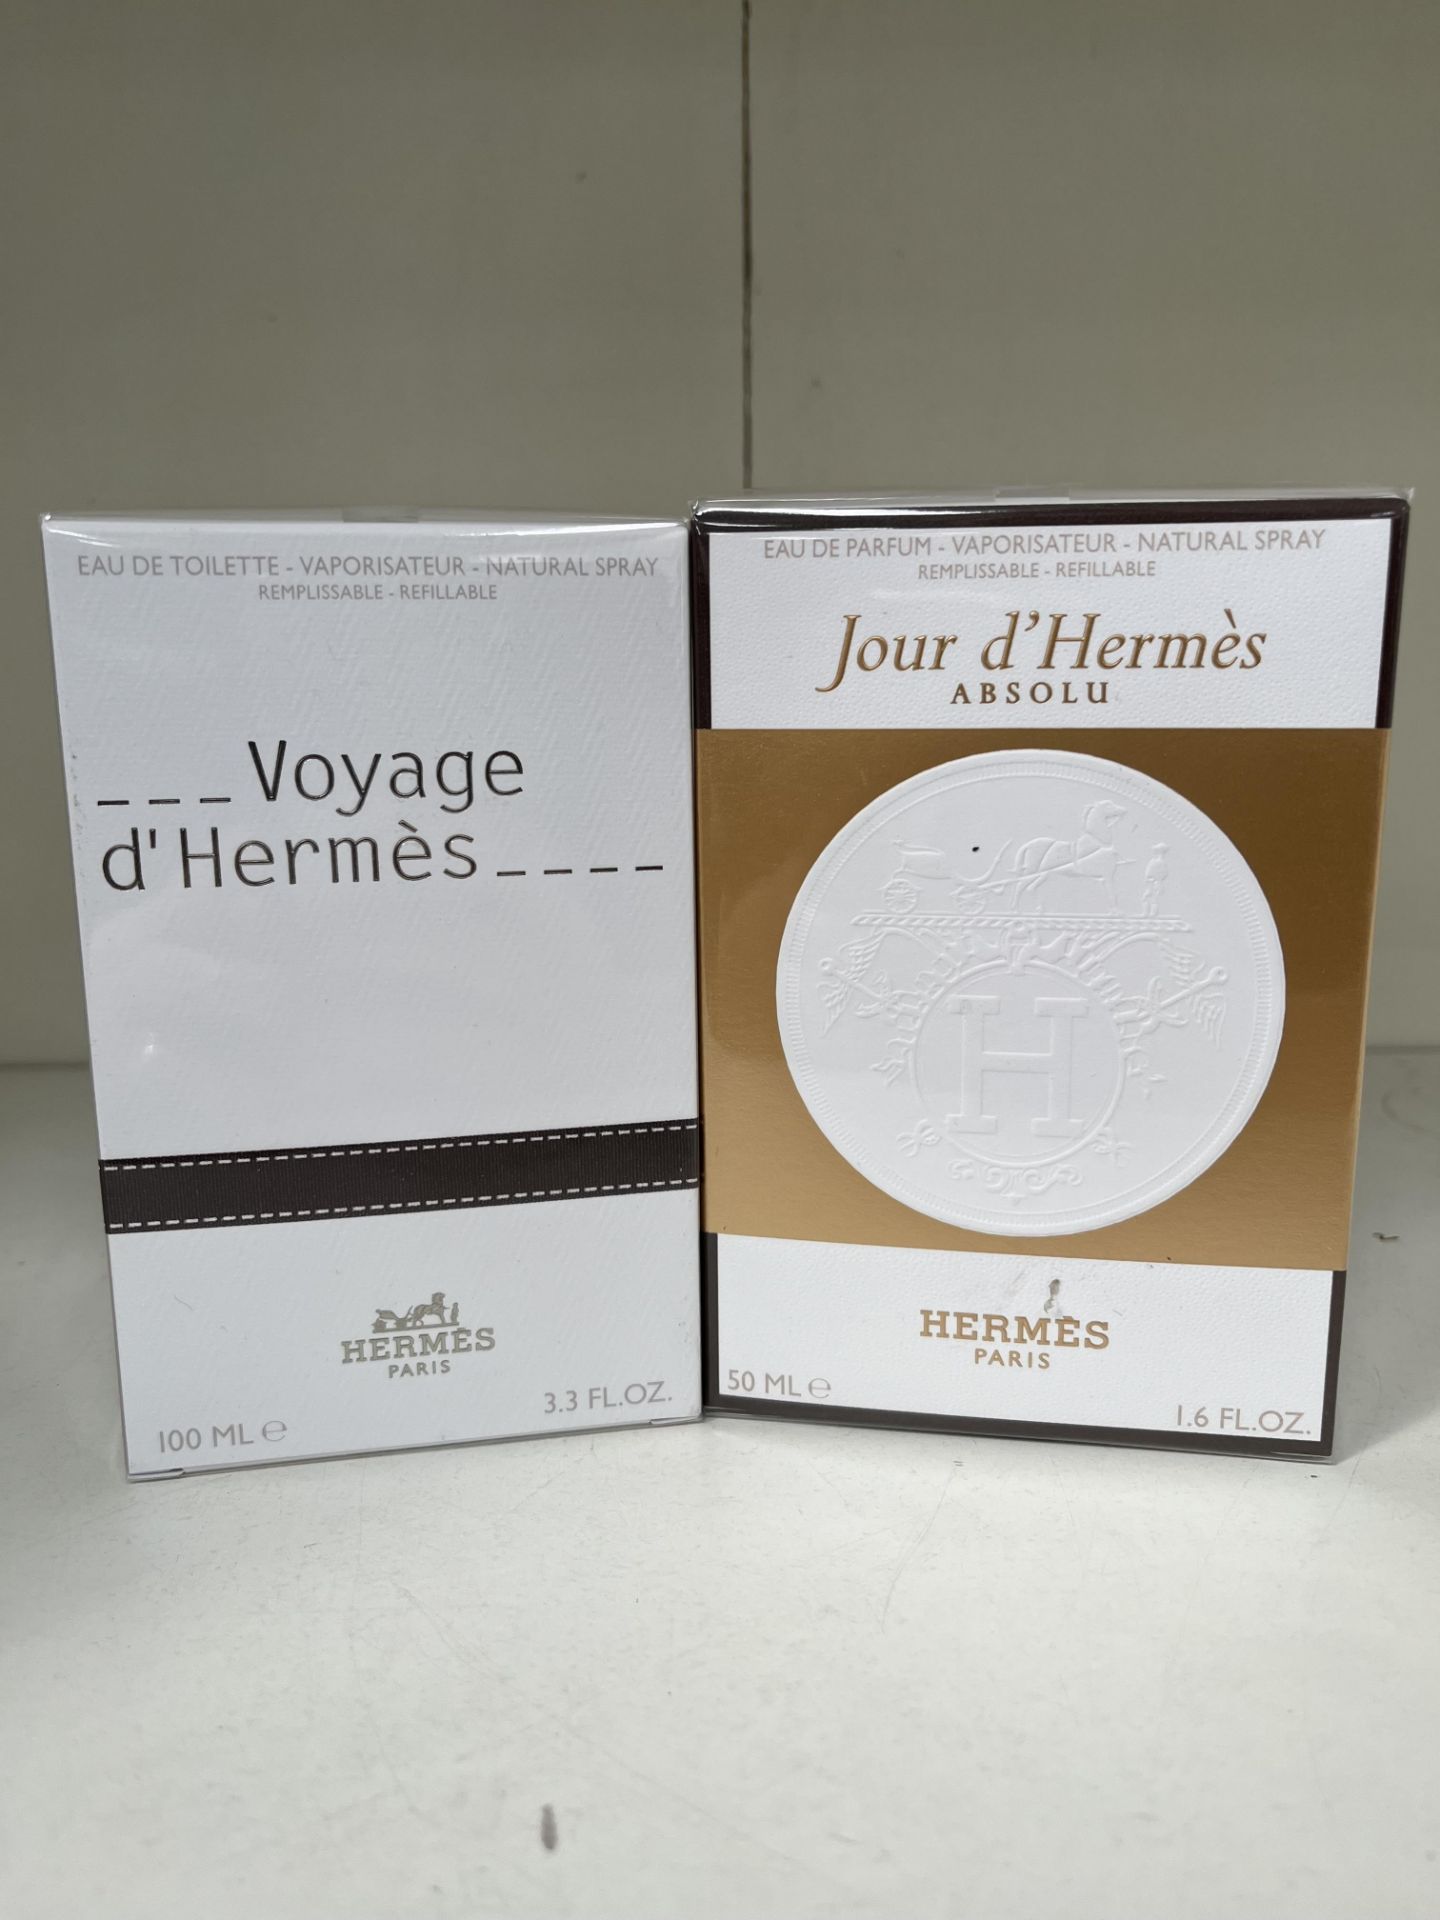 1x 100ml Hermès Paris Voyage De Hermès Natural Spray and 1x 50ml Hermès Paris Jour De Hermès Absolu